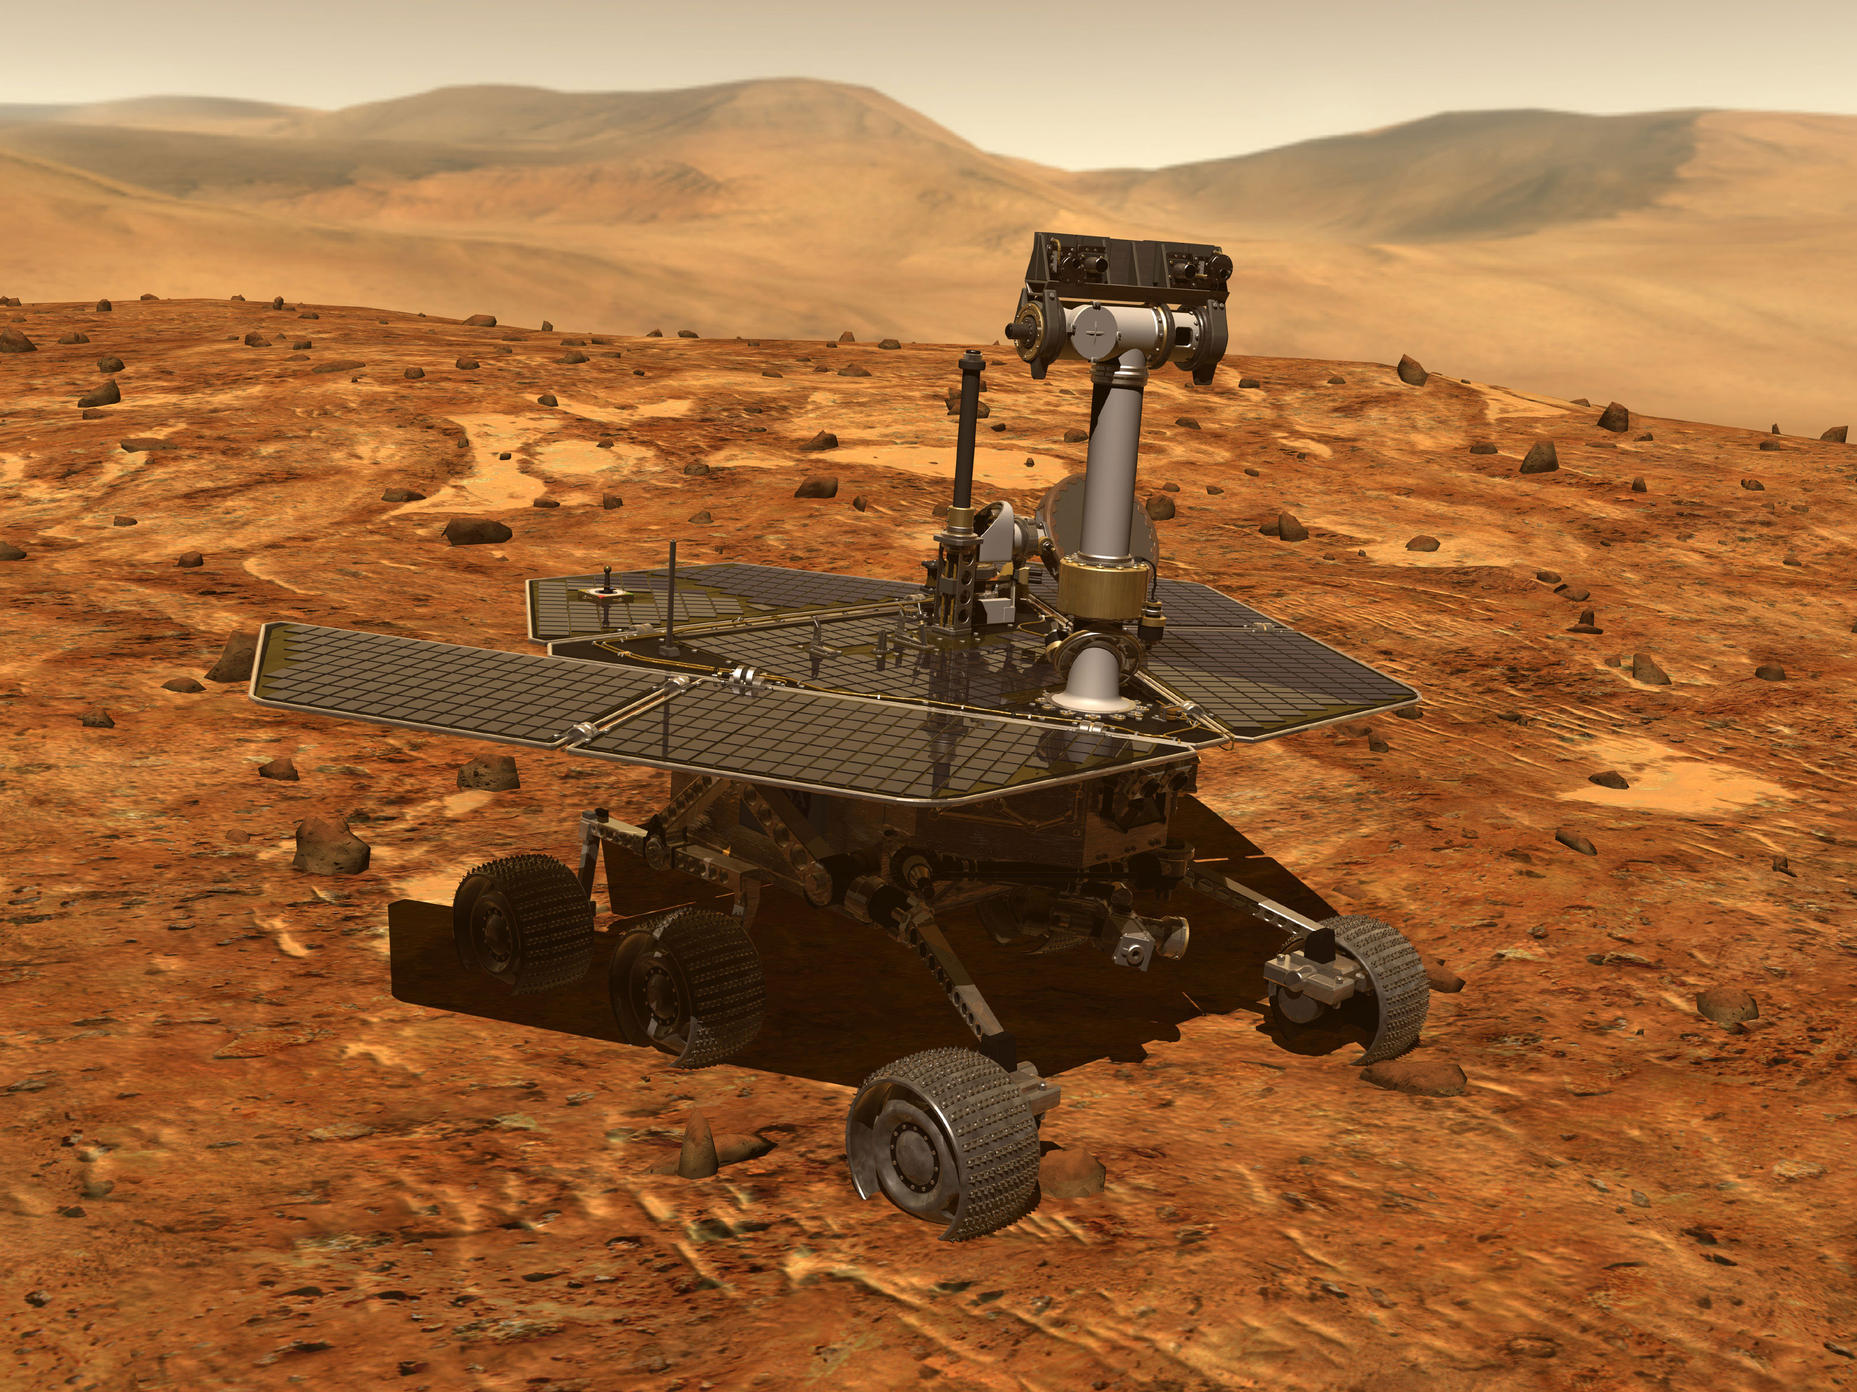 MARS ROVER OPPORTUNITY NASA LAPEL PIN 